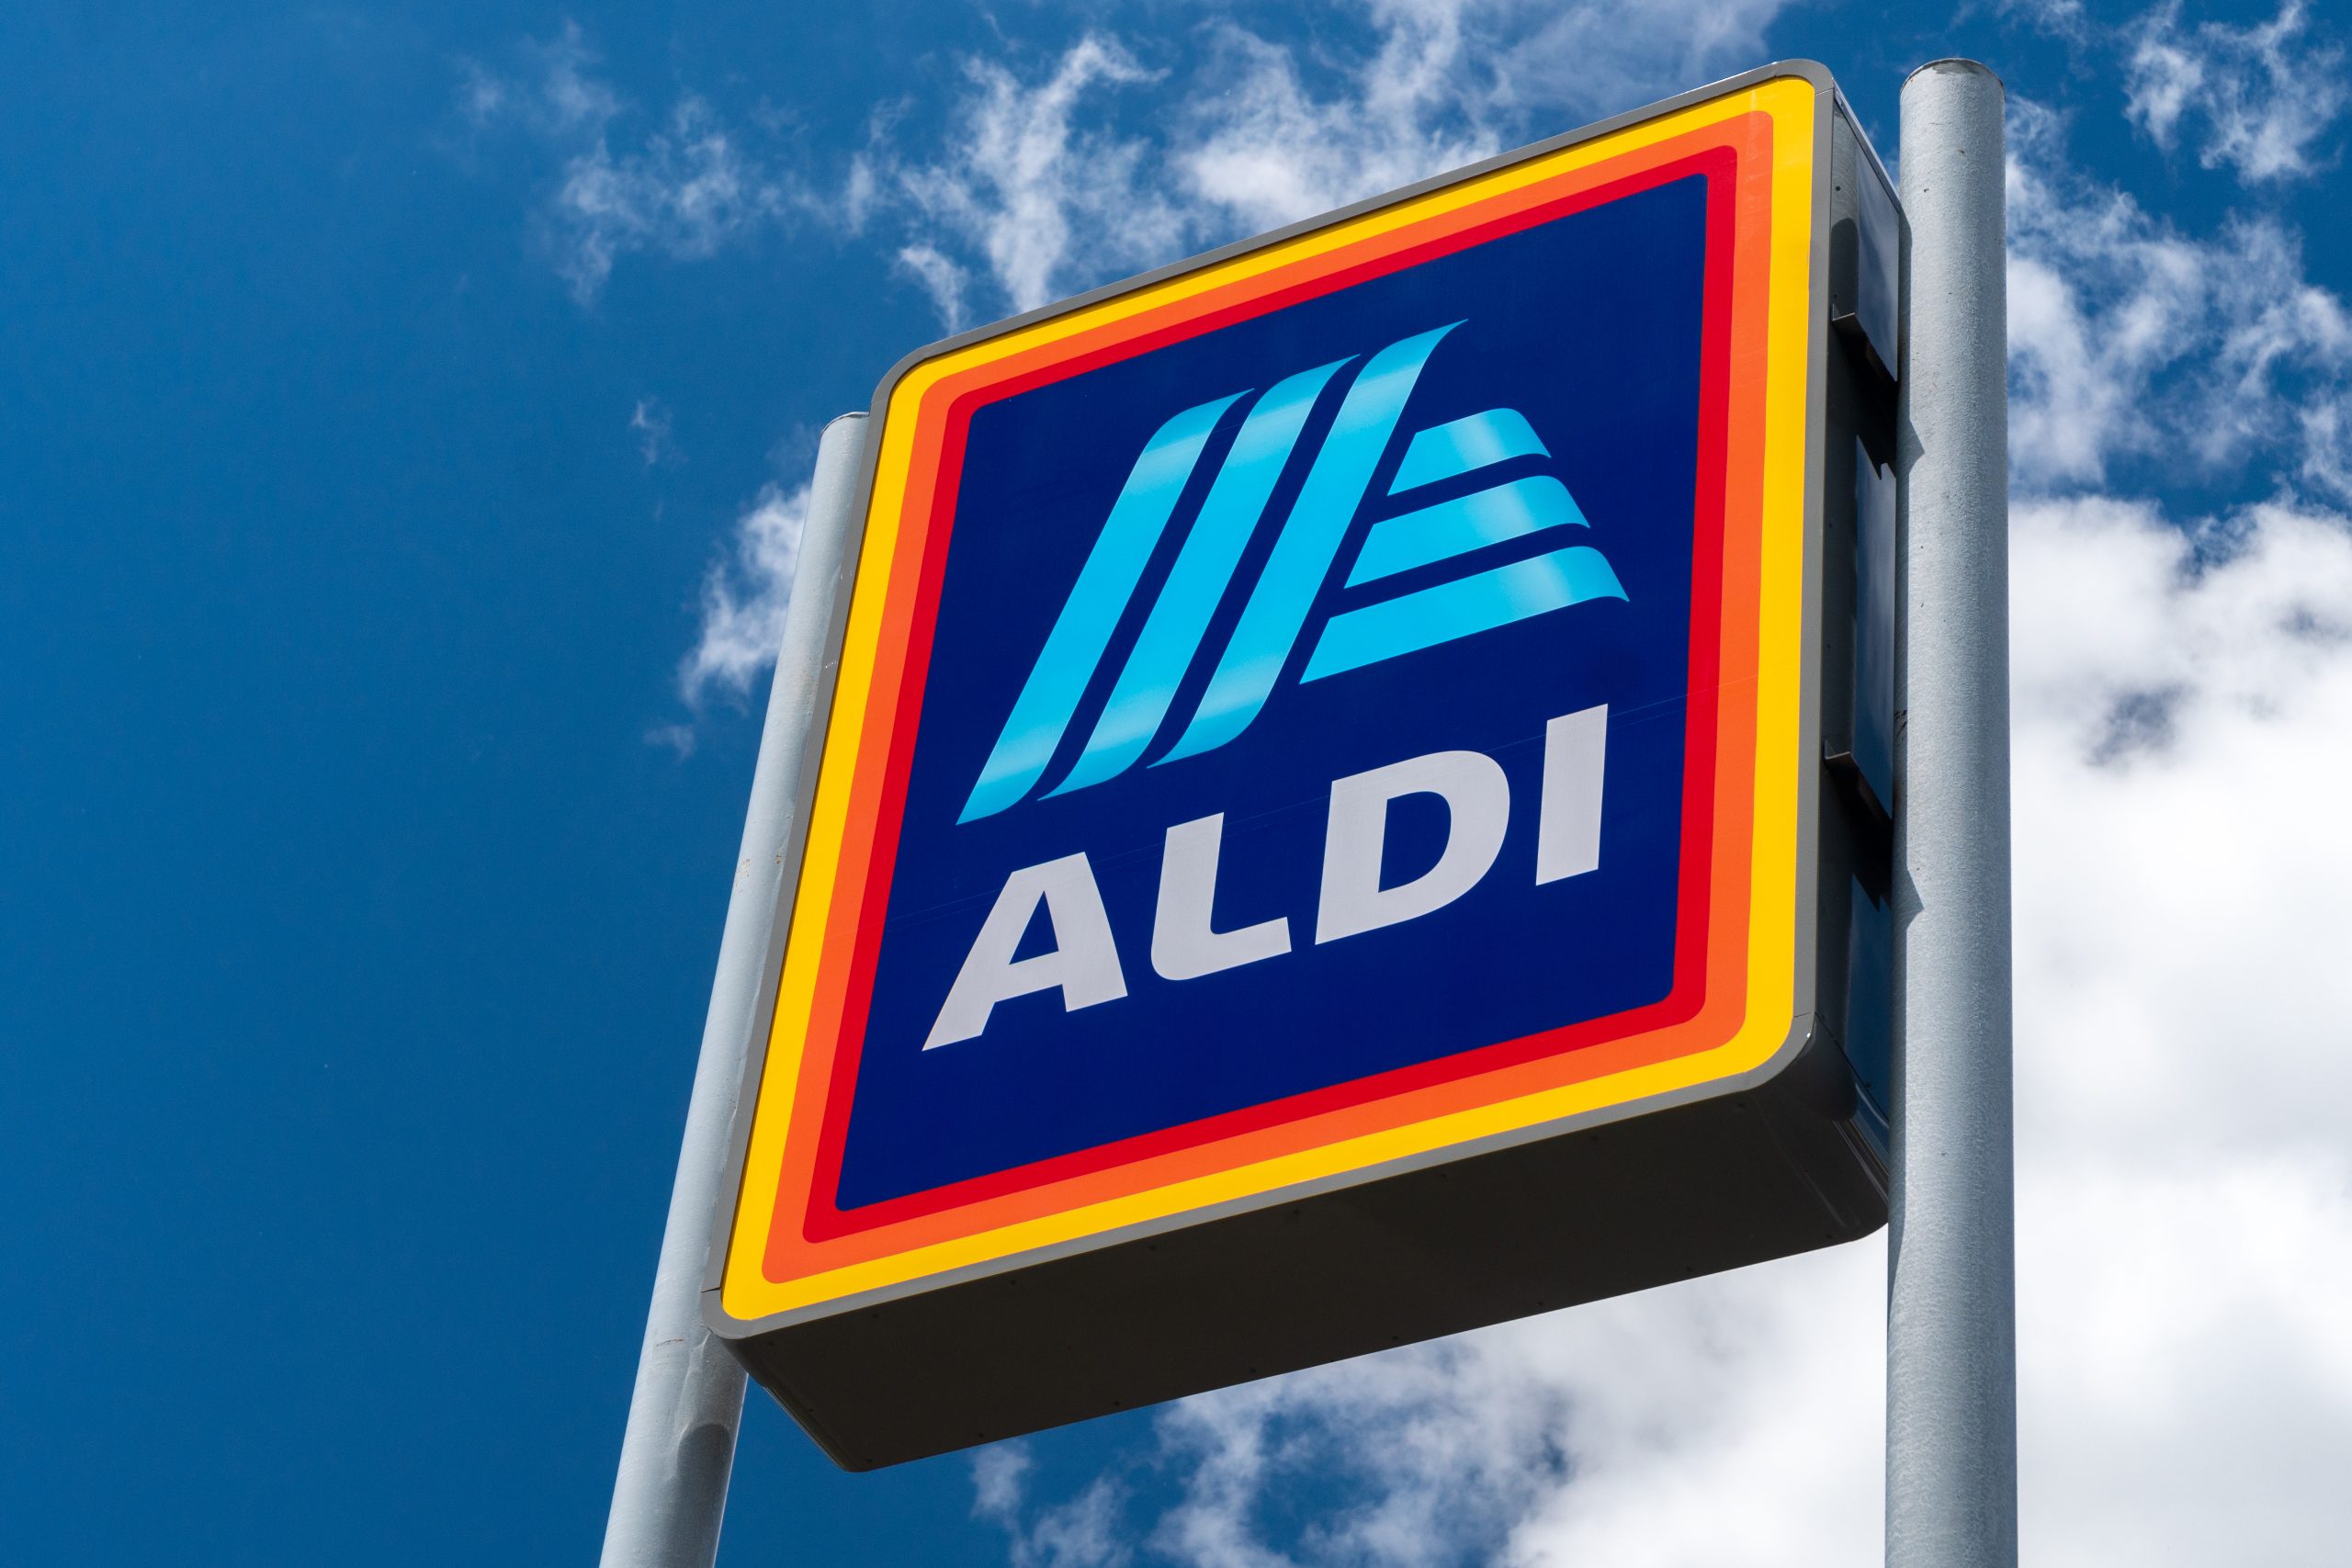 Aldi Invest €15M in Deposit Return Scheme